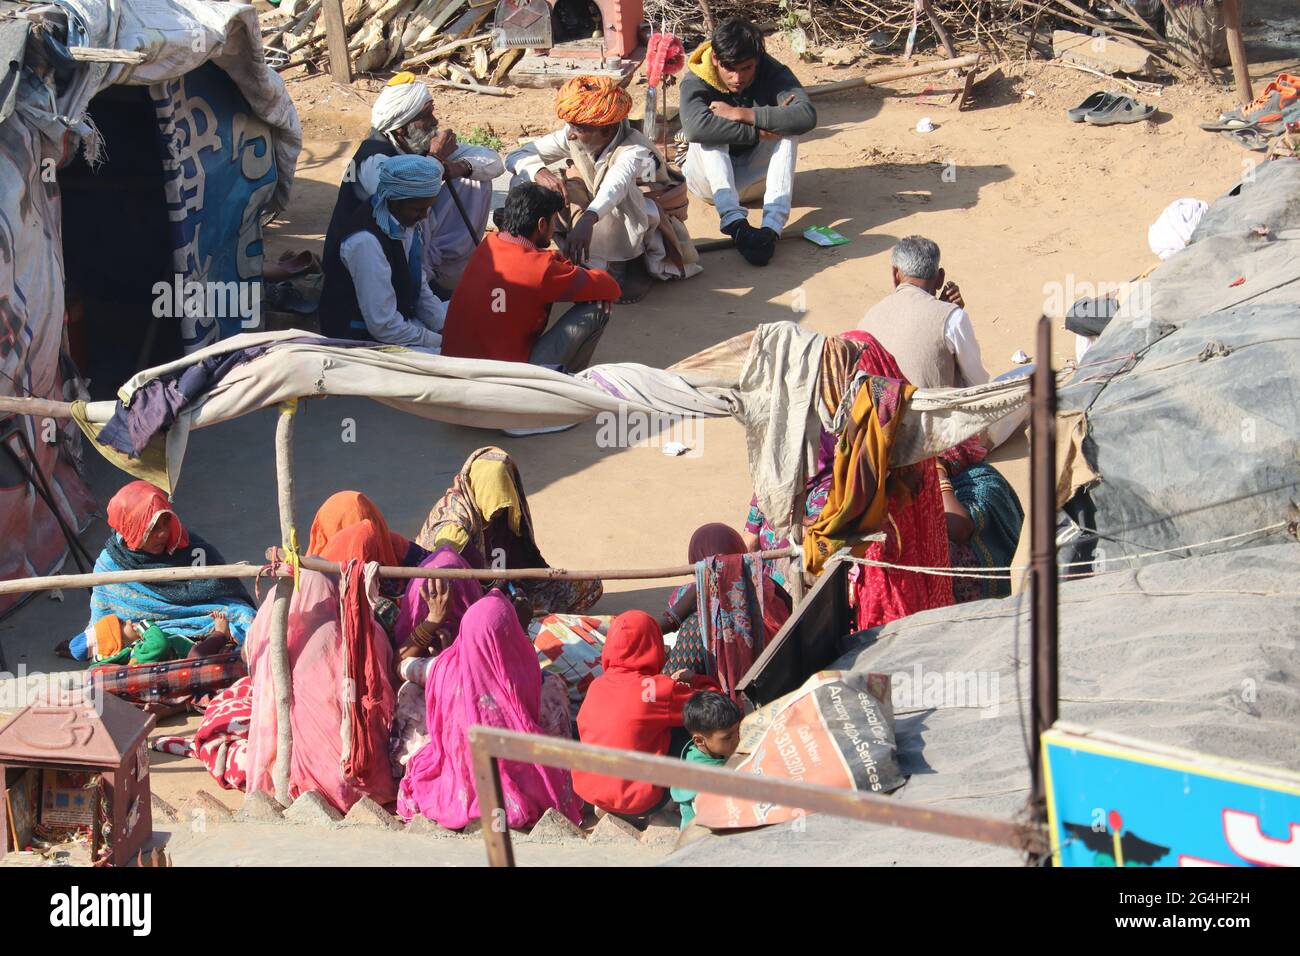 Haryana/India - 03 dic 2019: Indiani che non hanno la propria casa. Le persone si crogiolano alla luce del sole dopo una notte fredda. Foto Stock